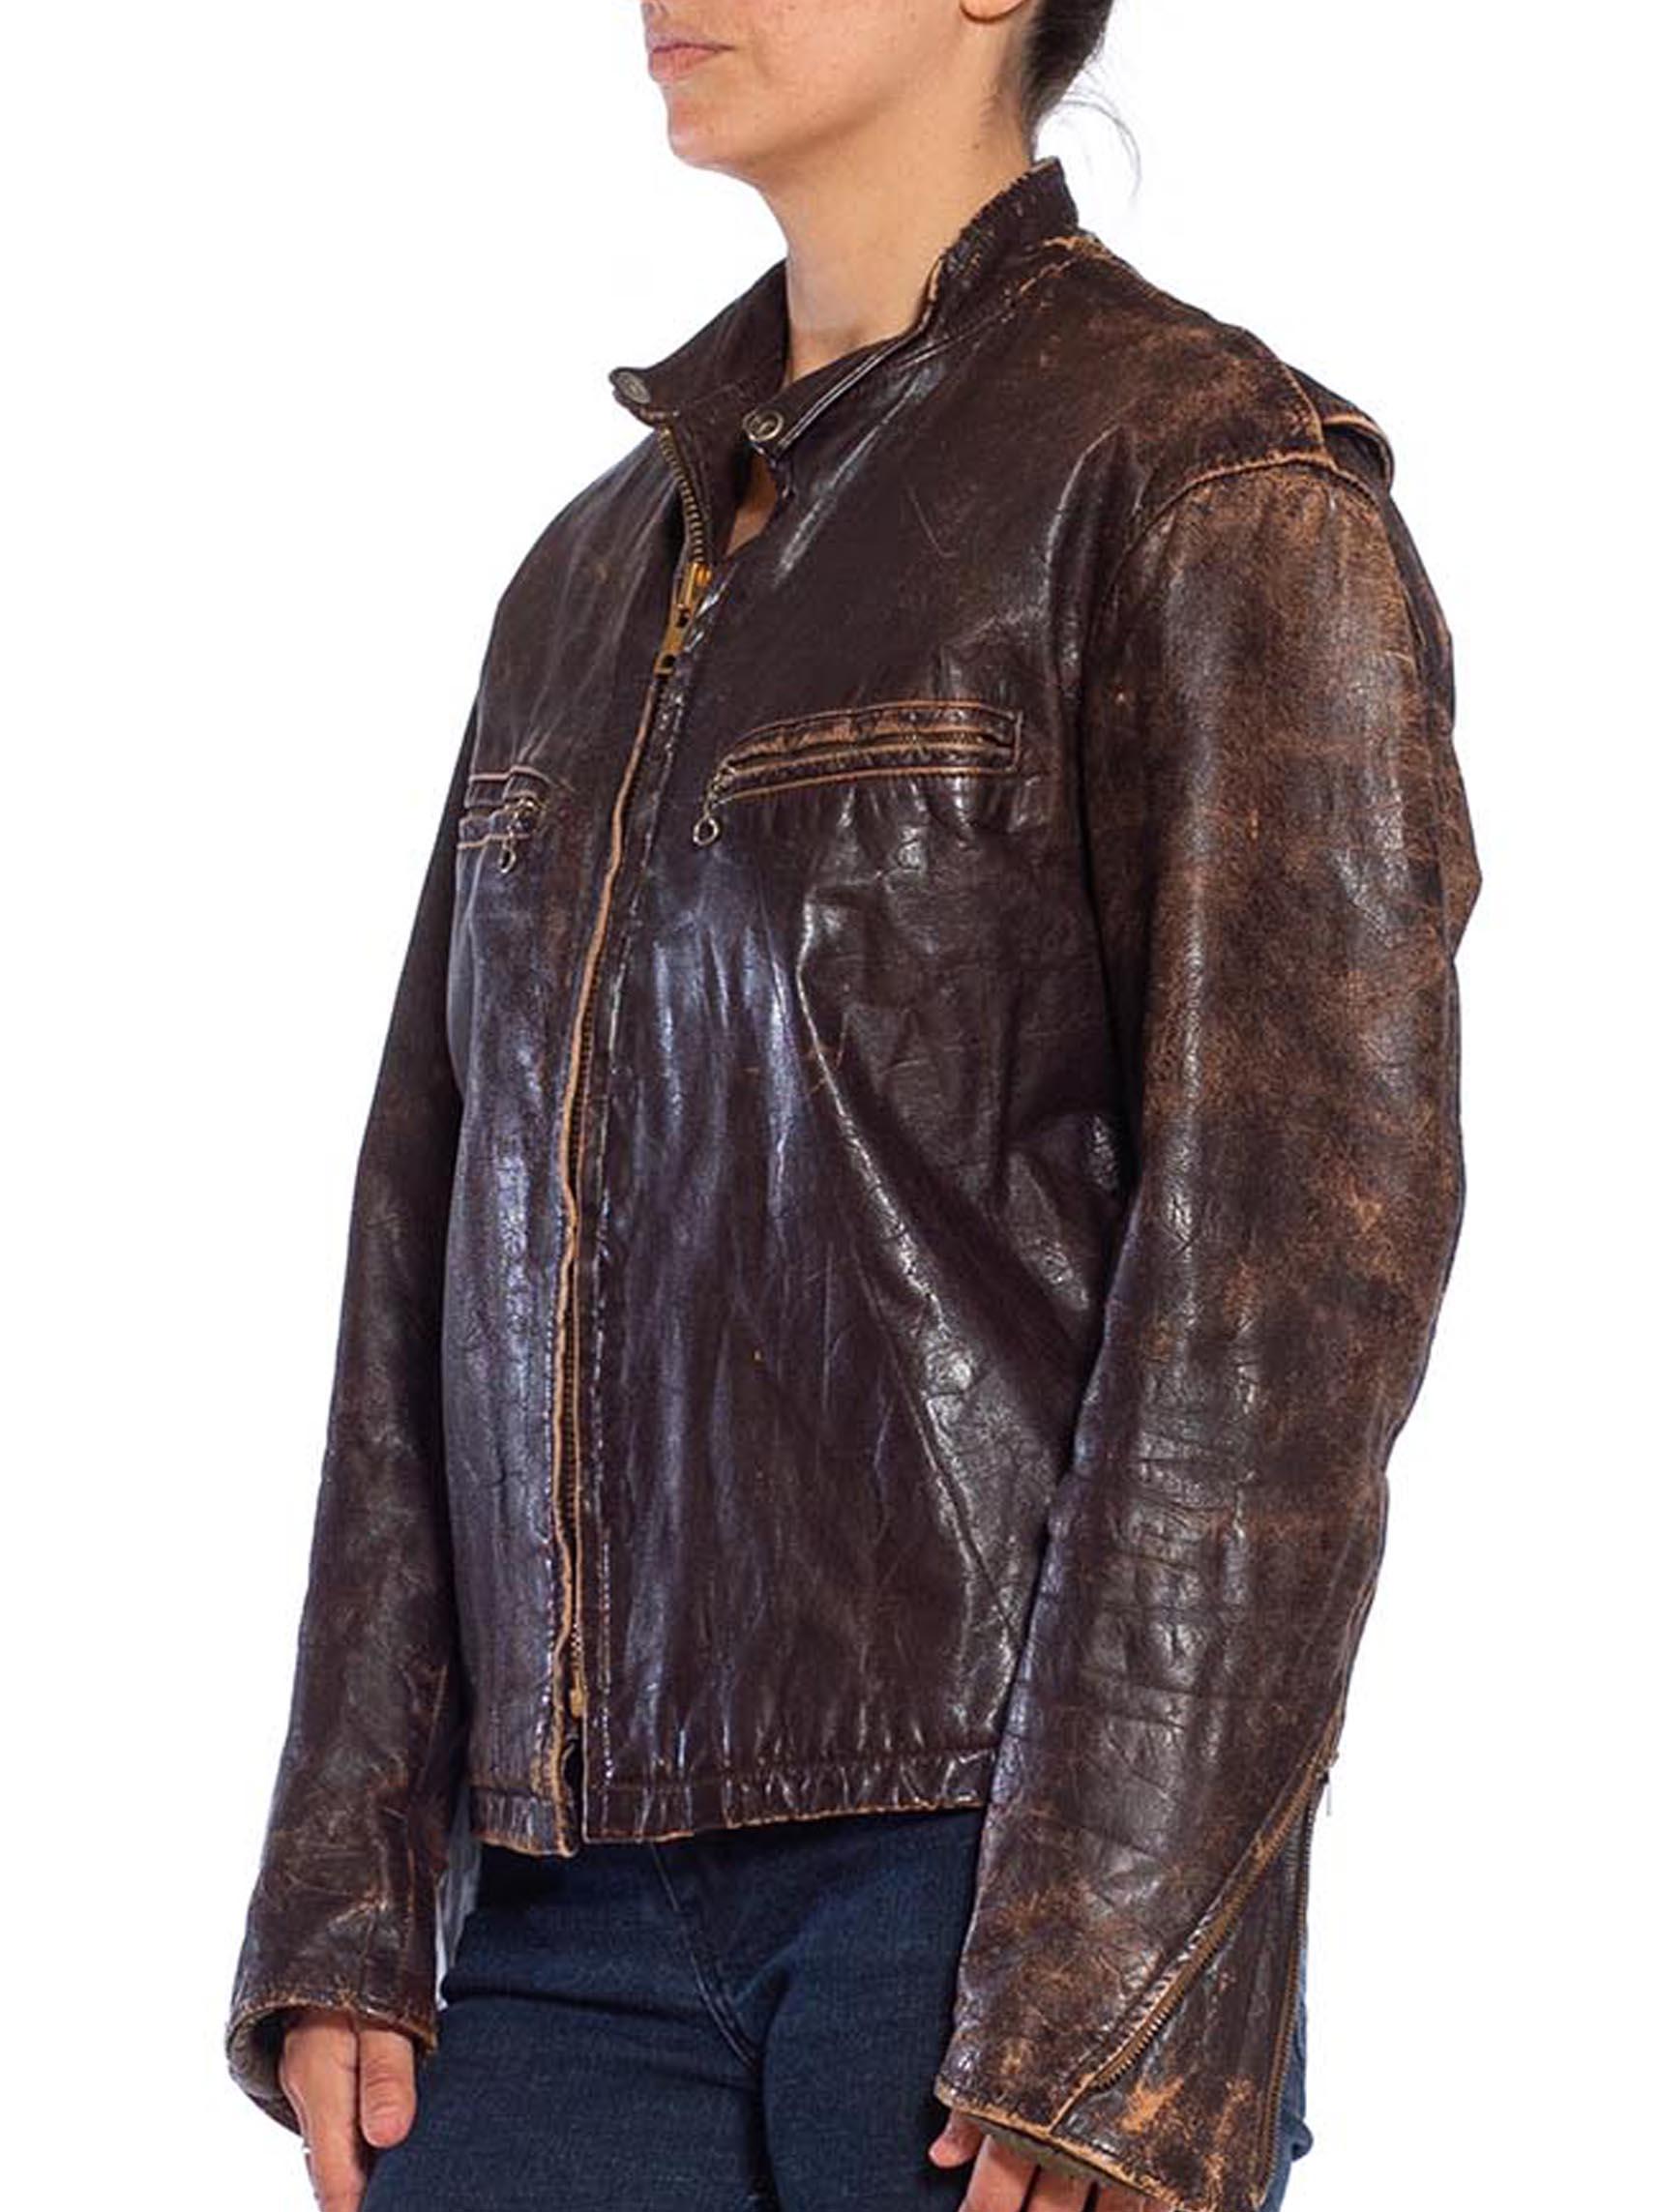 1940s leather jacket